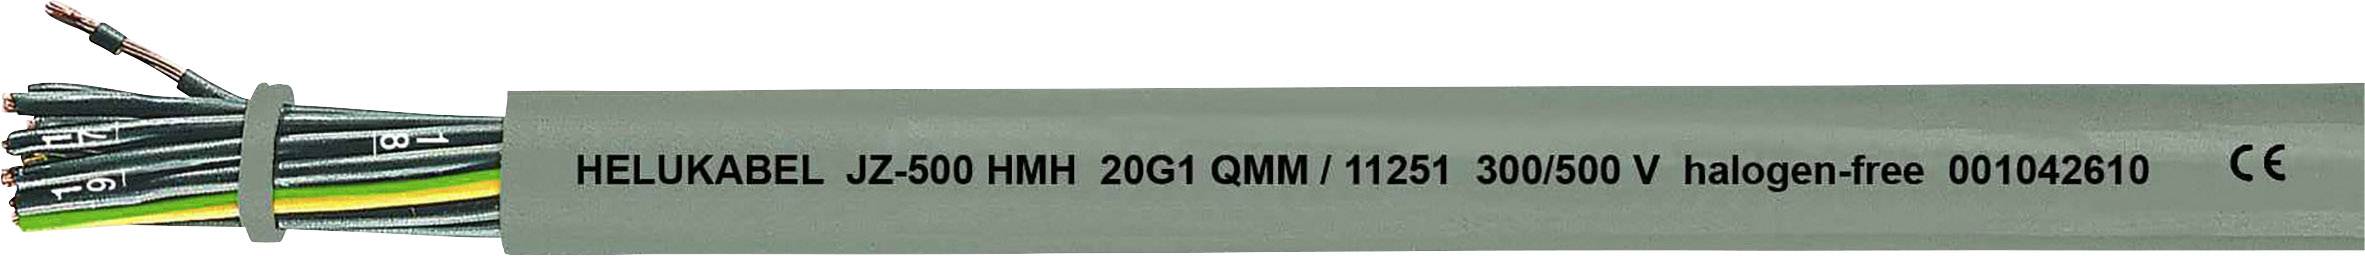 HELUKABEL JZ-500 HMH Steuerleitung 4 G 2.50 mm² Grau 11279-1000 1000 m